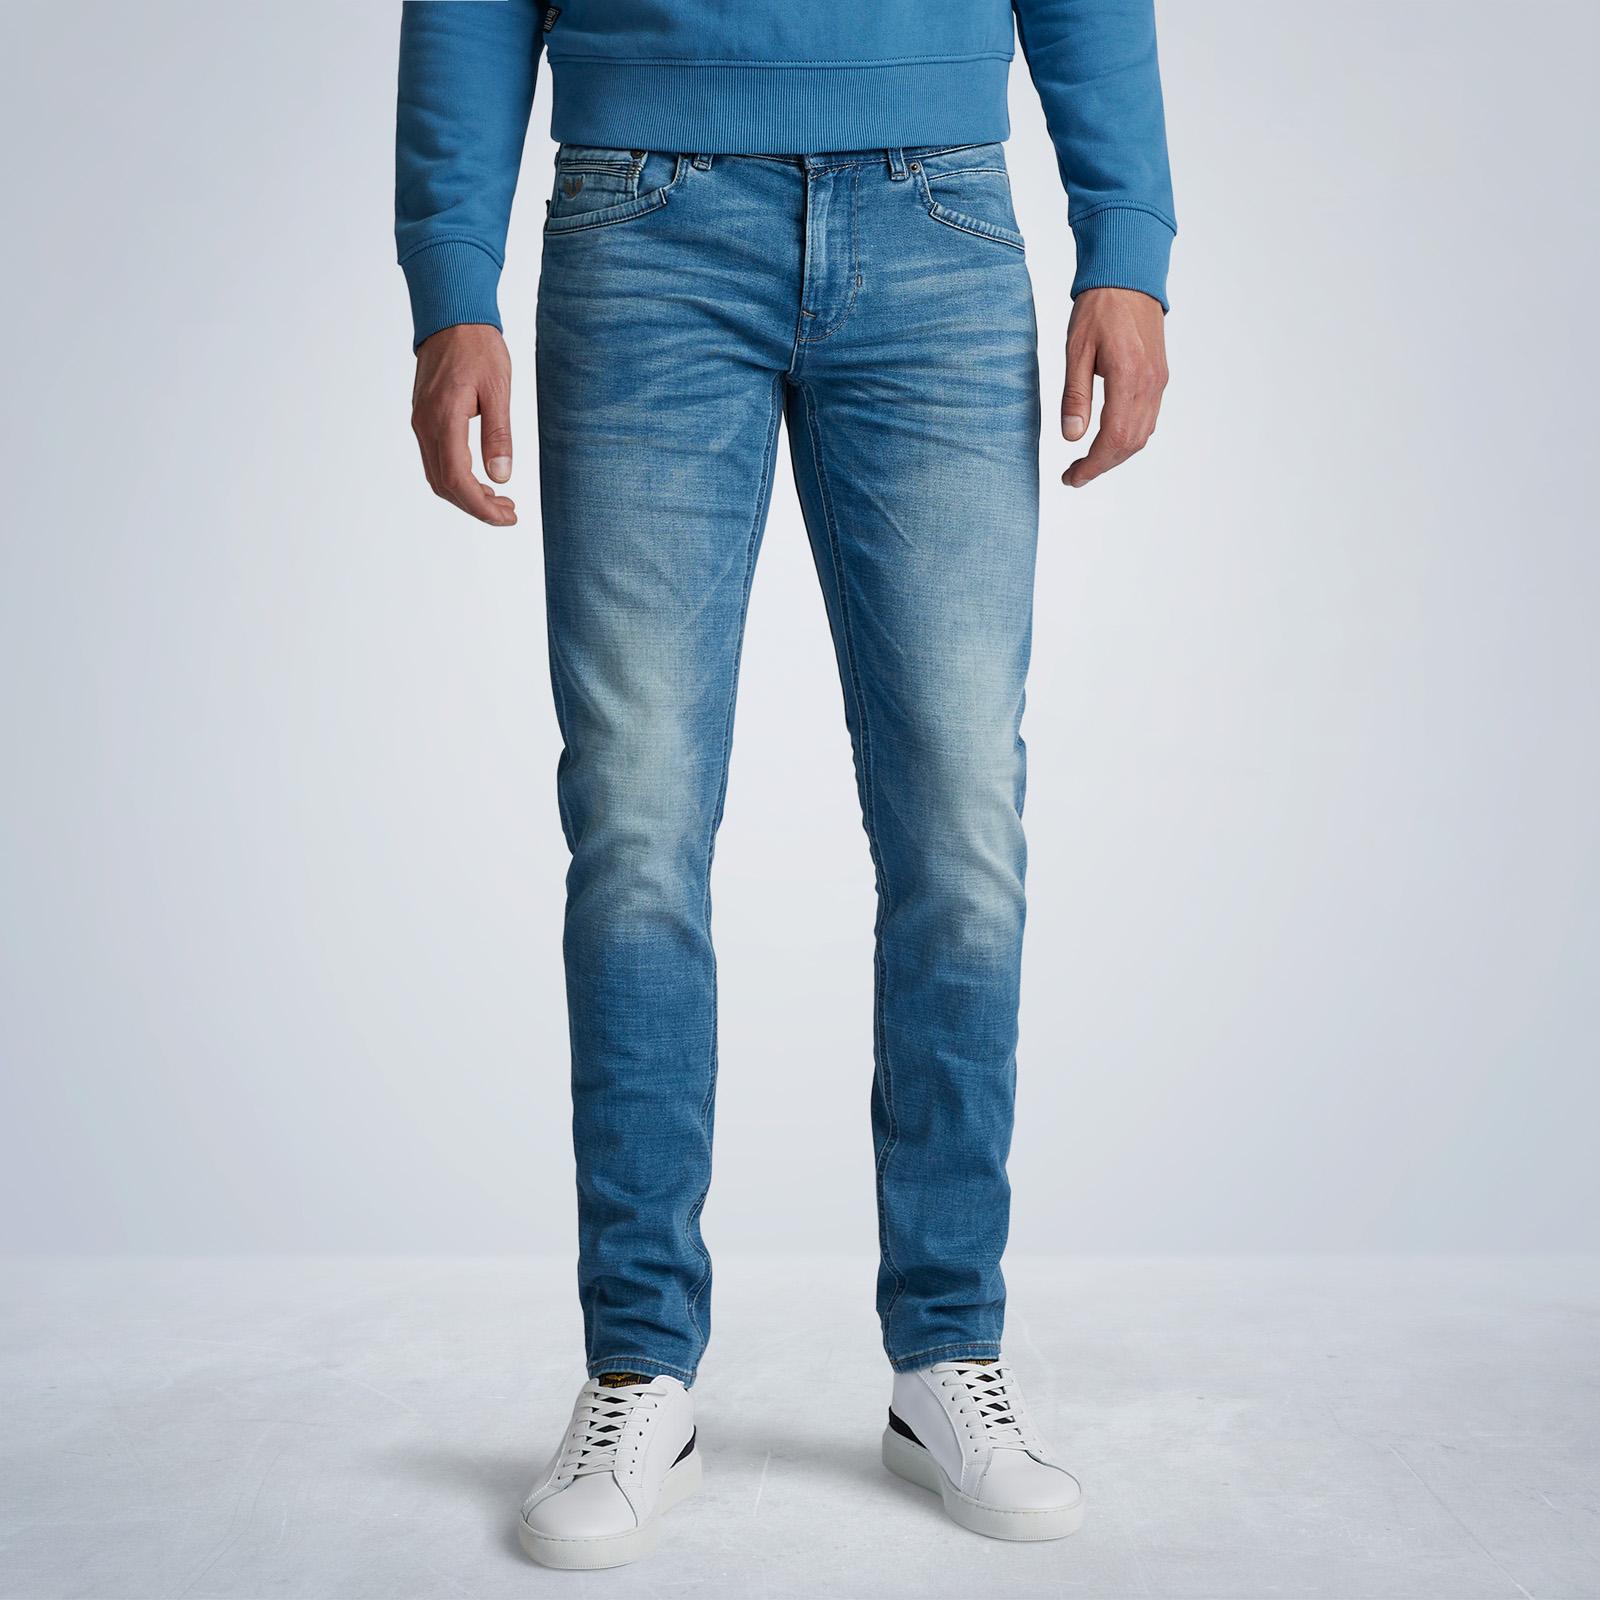 PME Legend Tailwheel Jeans